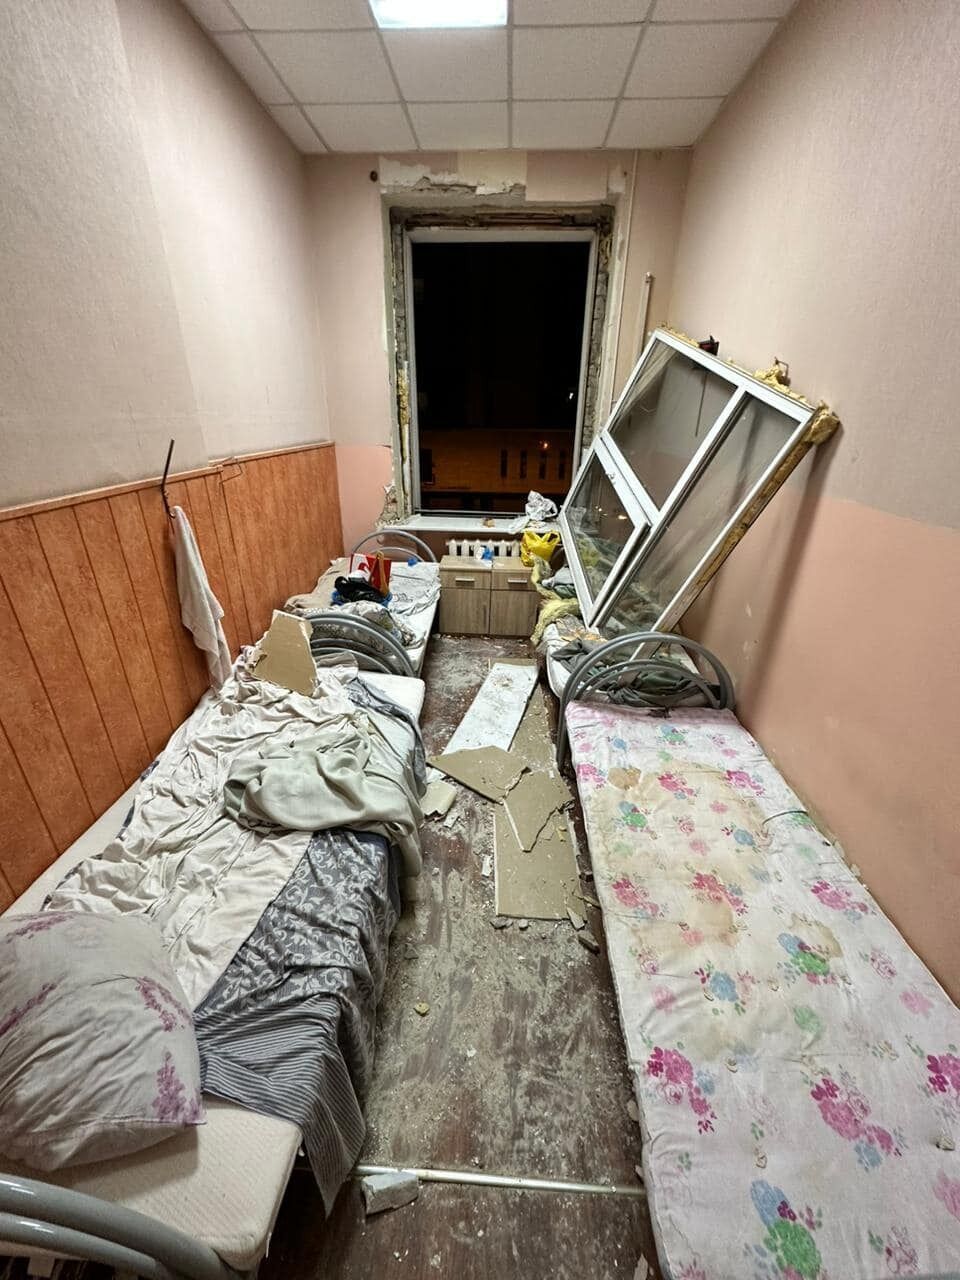 Війська РФ ударили по готелю, житлових будинках та адмінбудівлях у центрі Харкова: багато поранених. Всі деталі